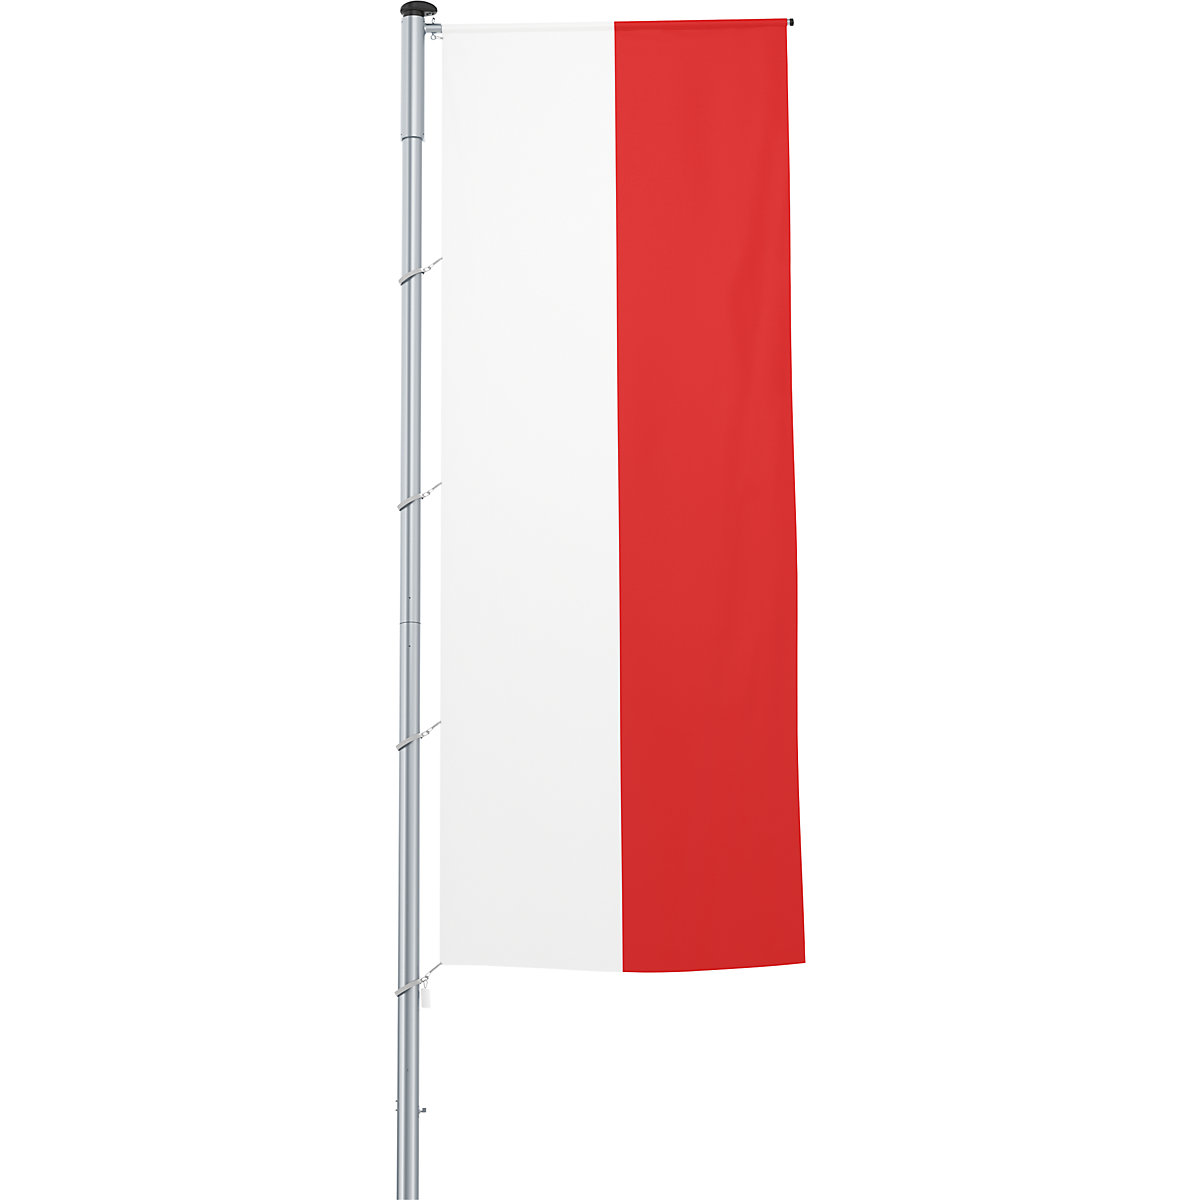 Gémes zászló/országzászló – Mannus, méret 1,2 x 3 m, Lengyelország-26